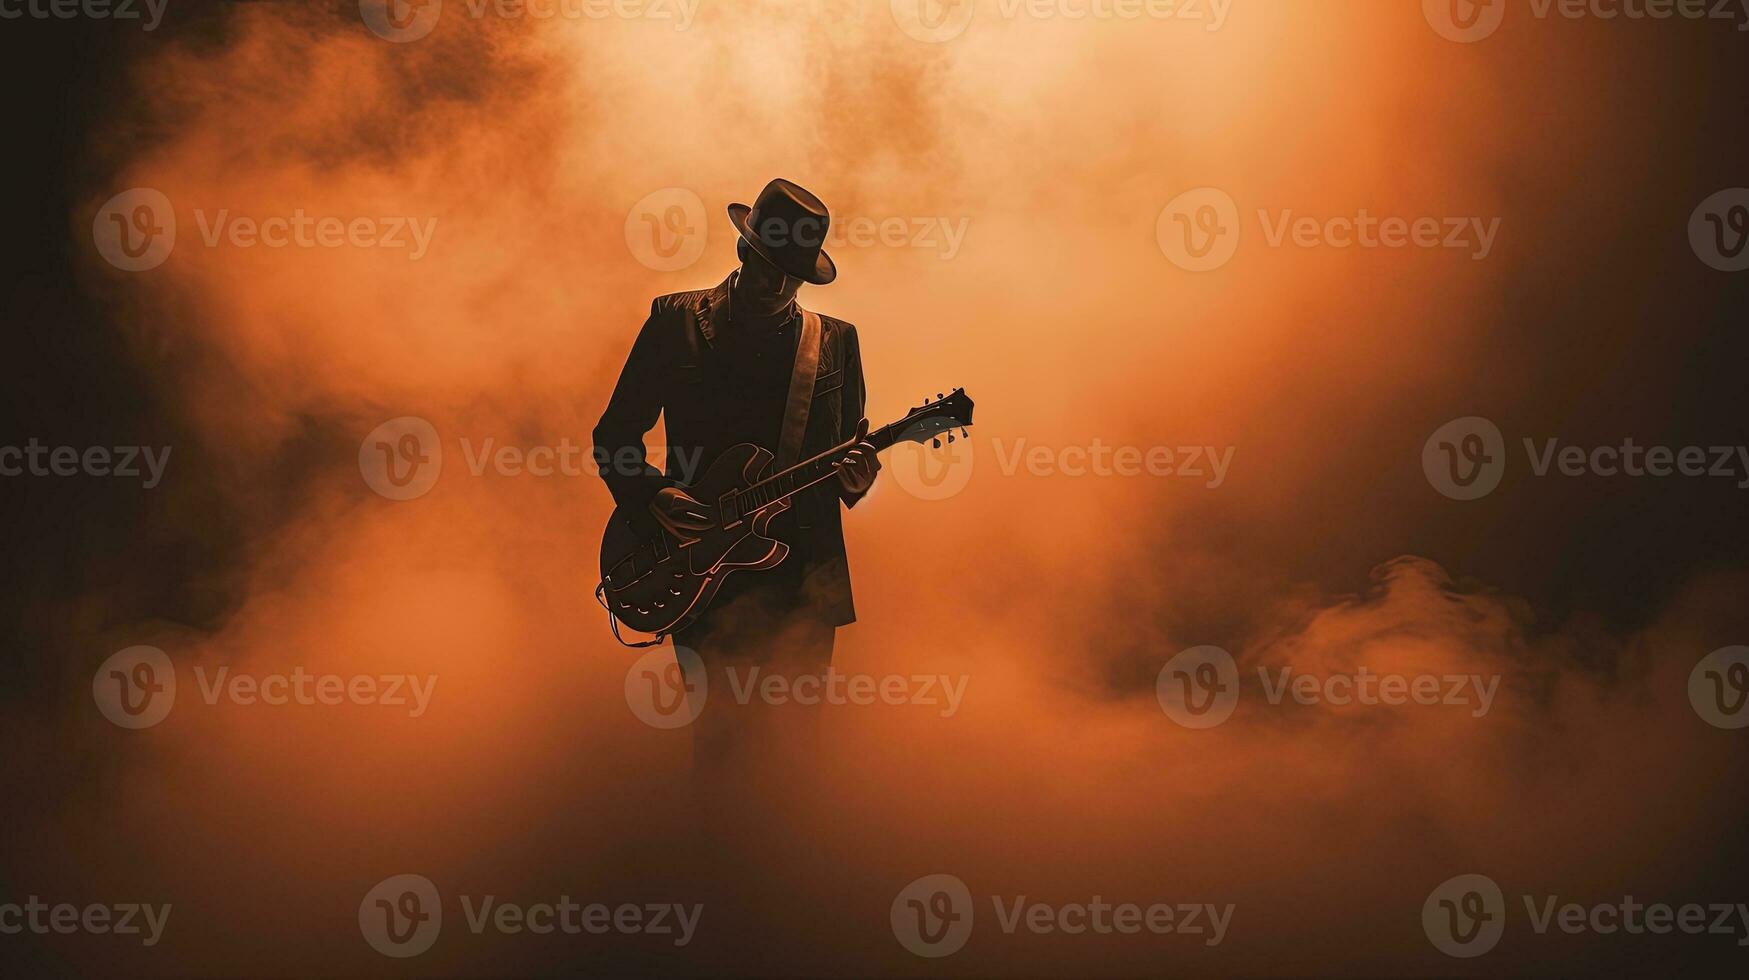 retro estilo foto do guitarrista s silhueta cercado de fumaça dentro show